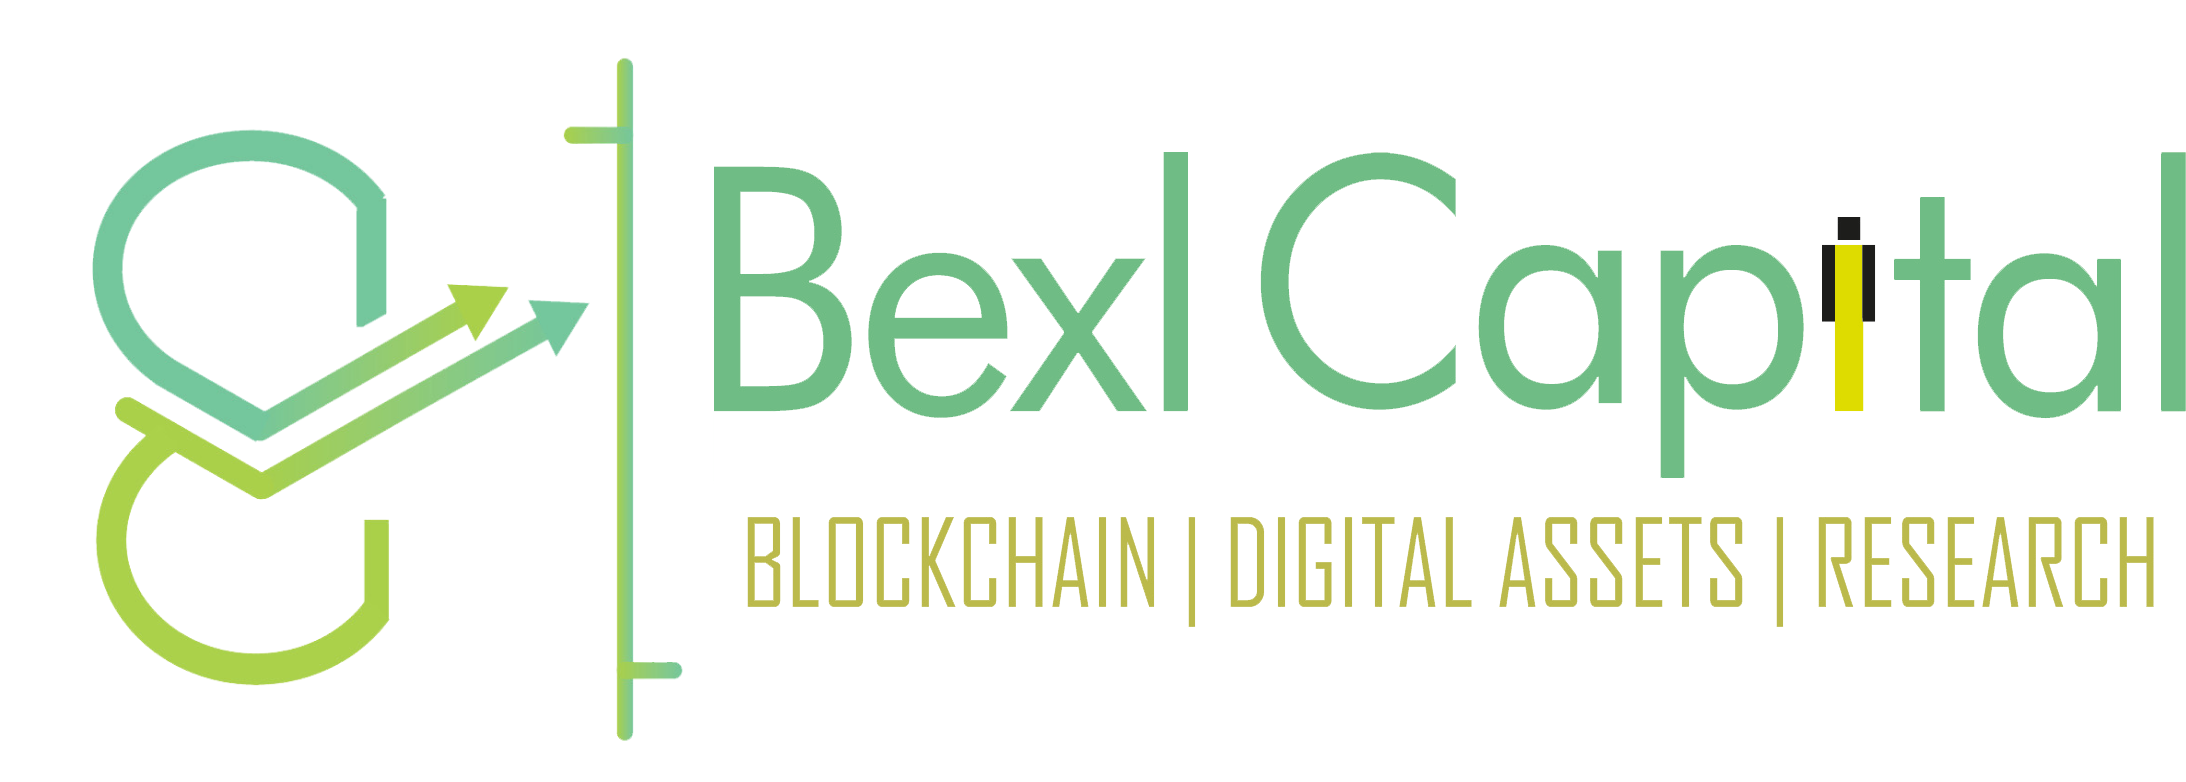 Bexl Capital Logo